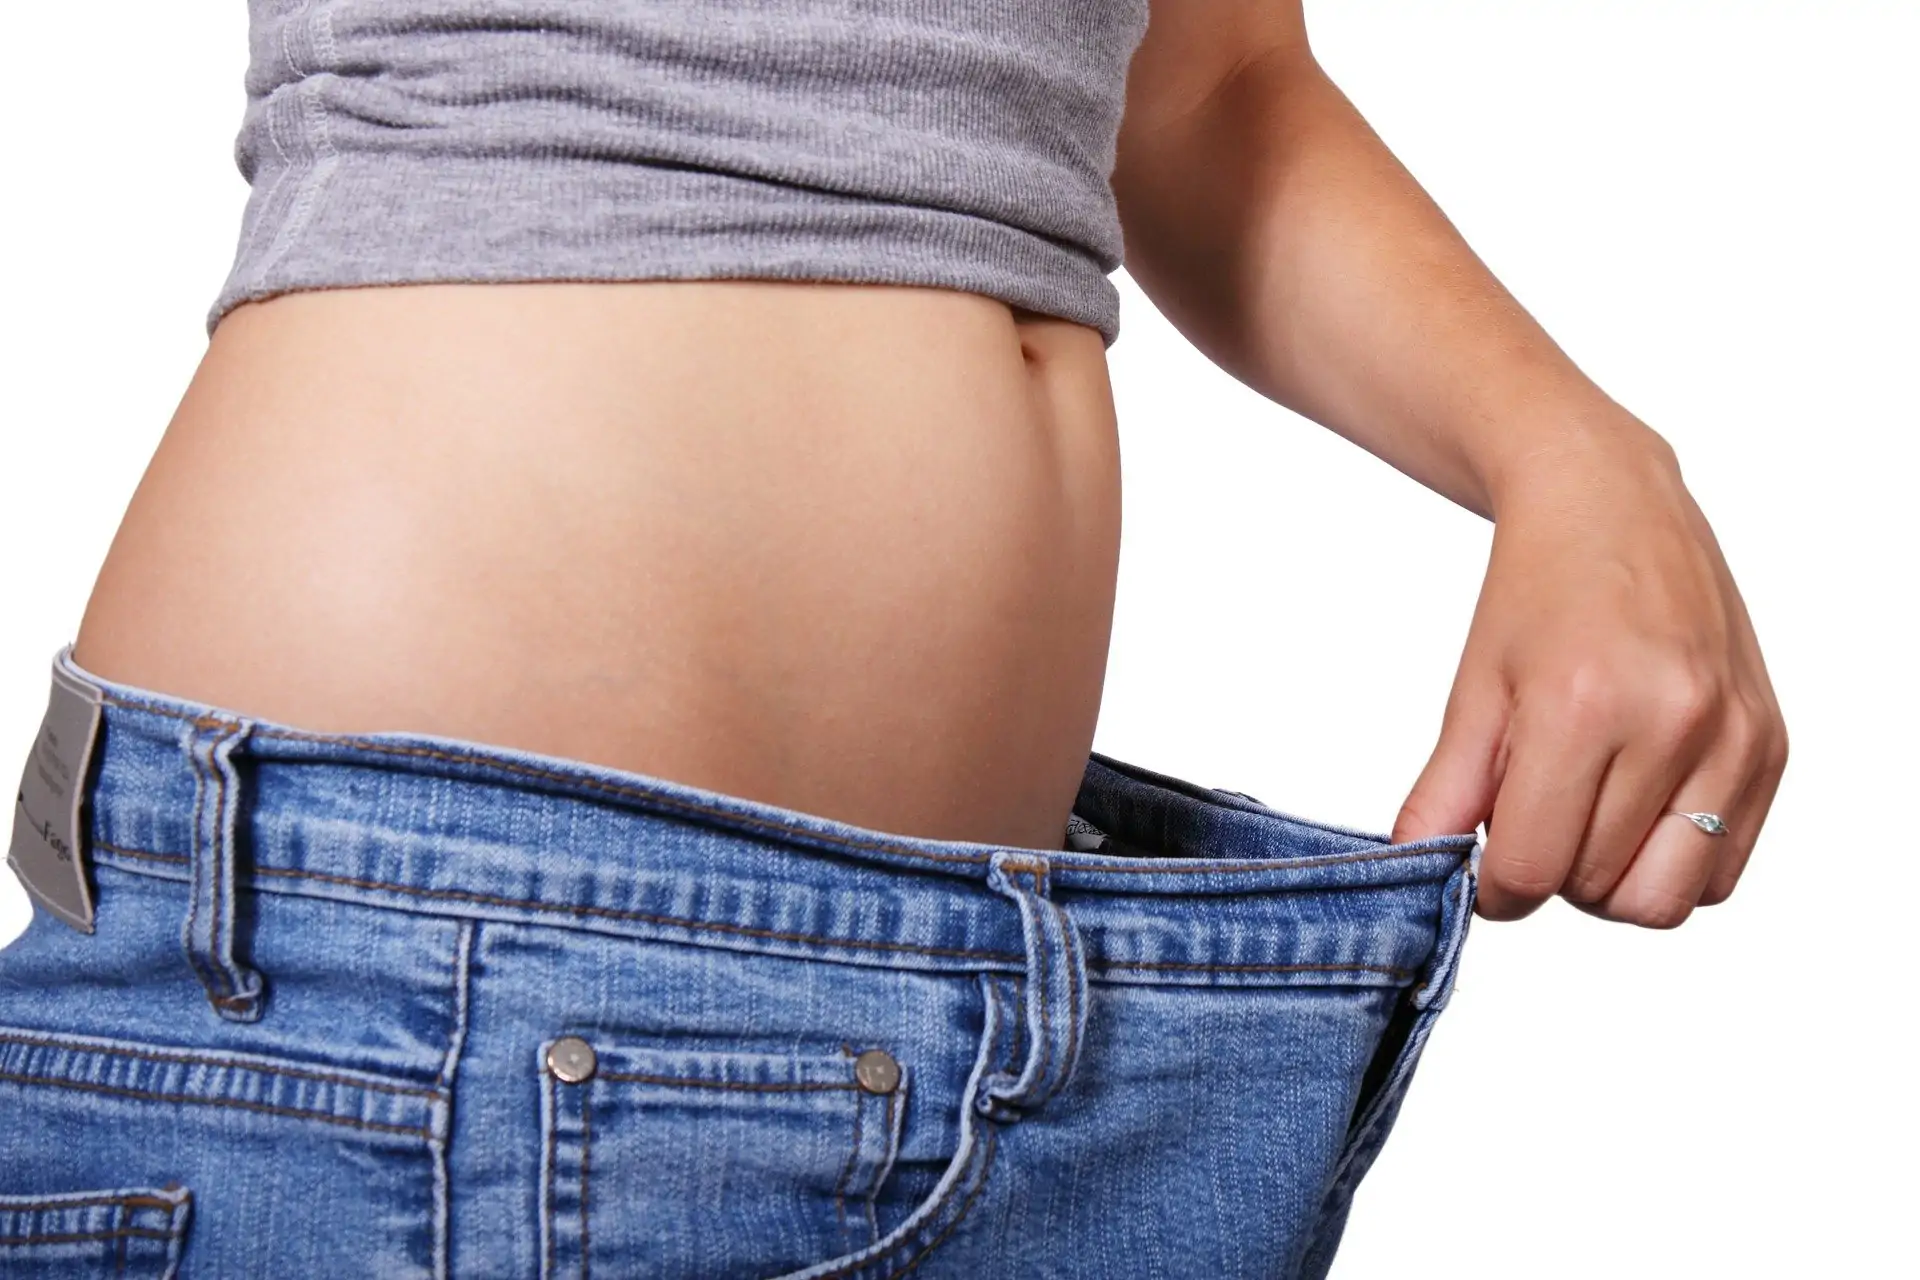 pierderea în greutate poate cauza dezechilibru hormonal